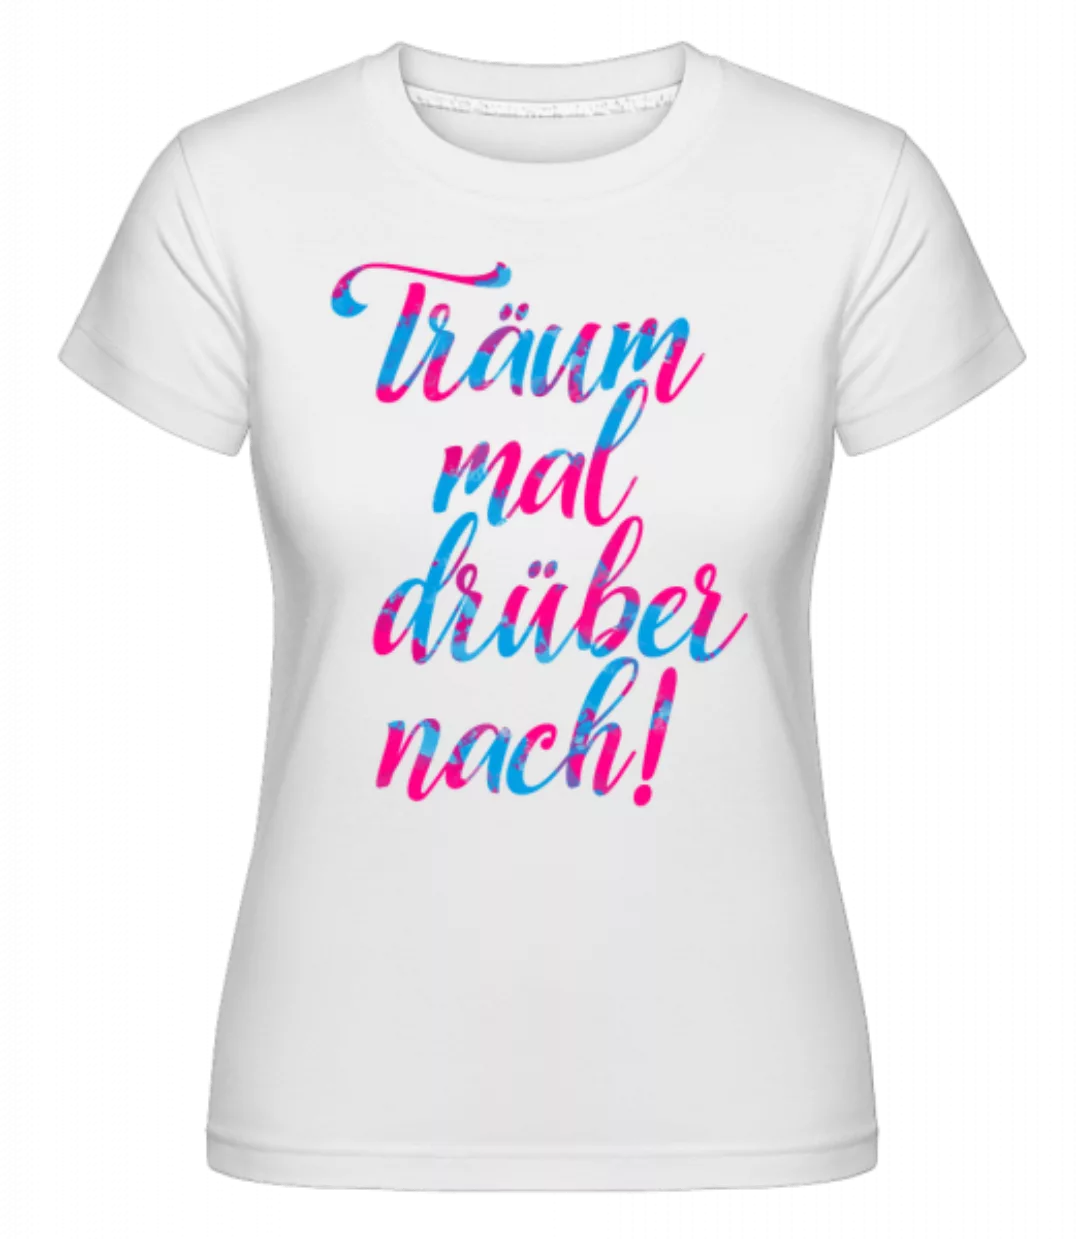 Träum Mal Drüber Nach · Shirtinator Frauen T-Shirt günstig online kaufen